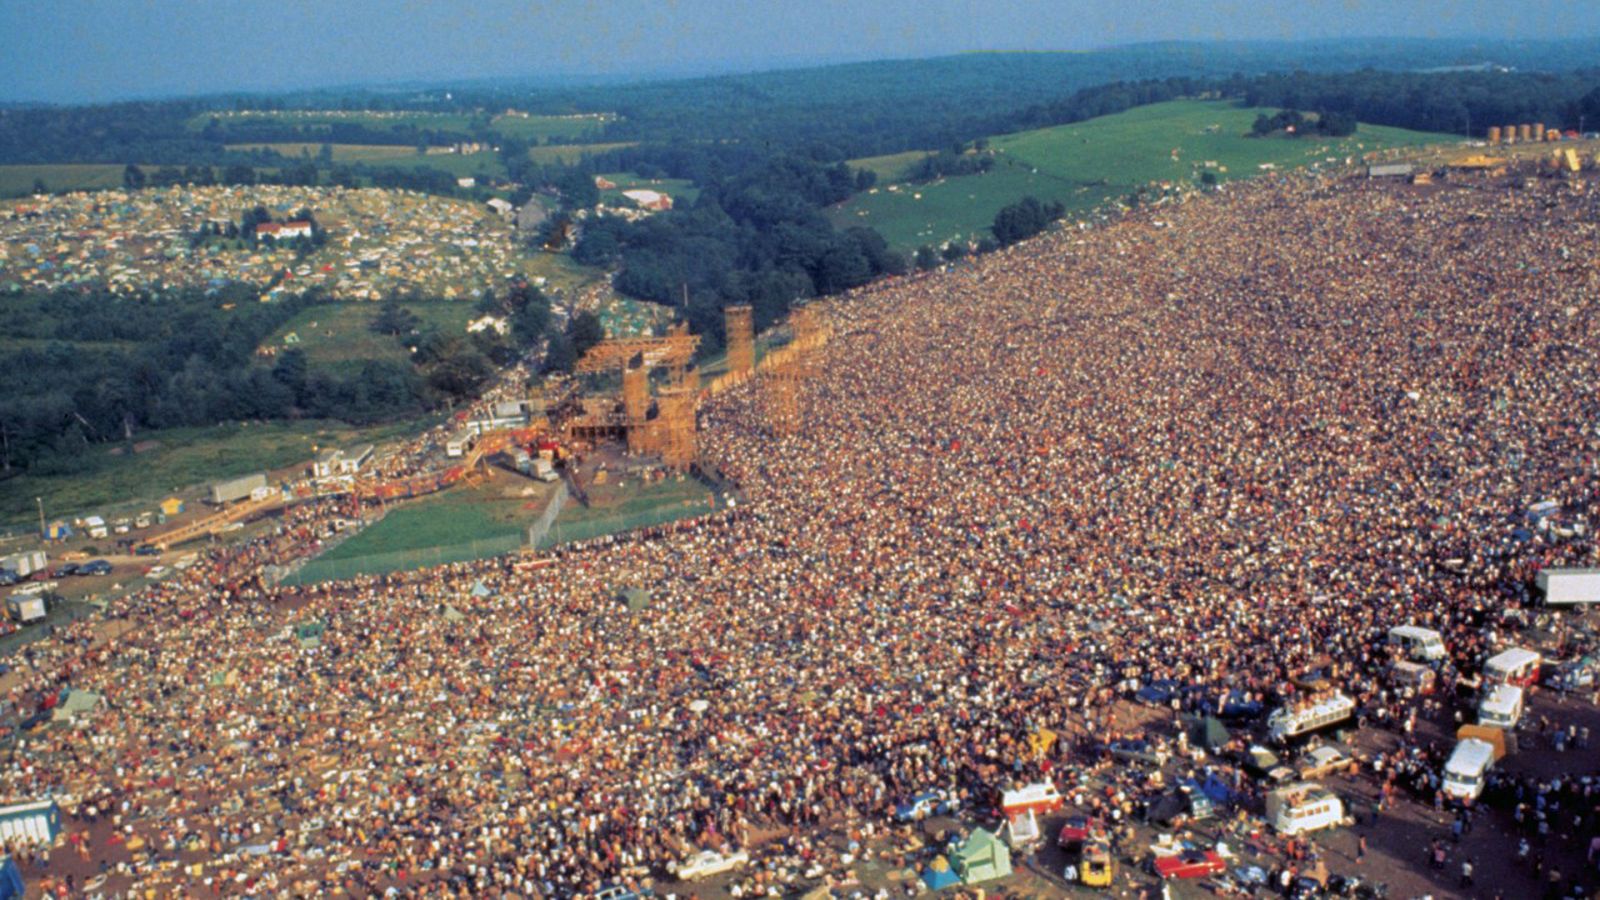 La noche temática - Woodstock, tres días que marcaron a una generación - ver ahora